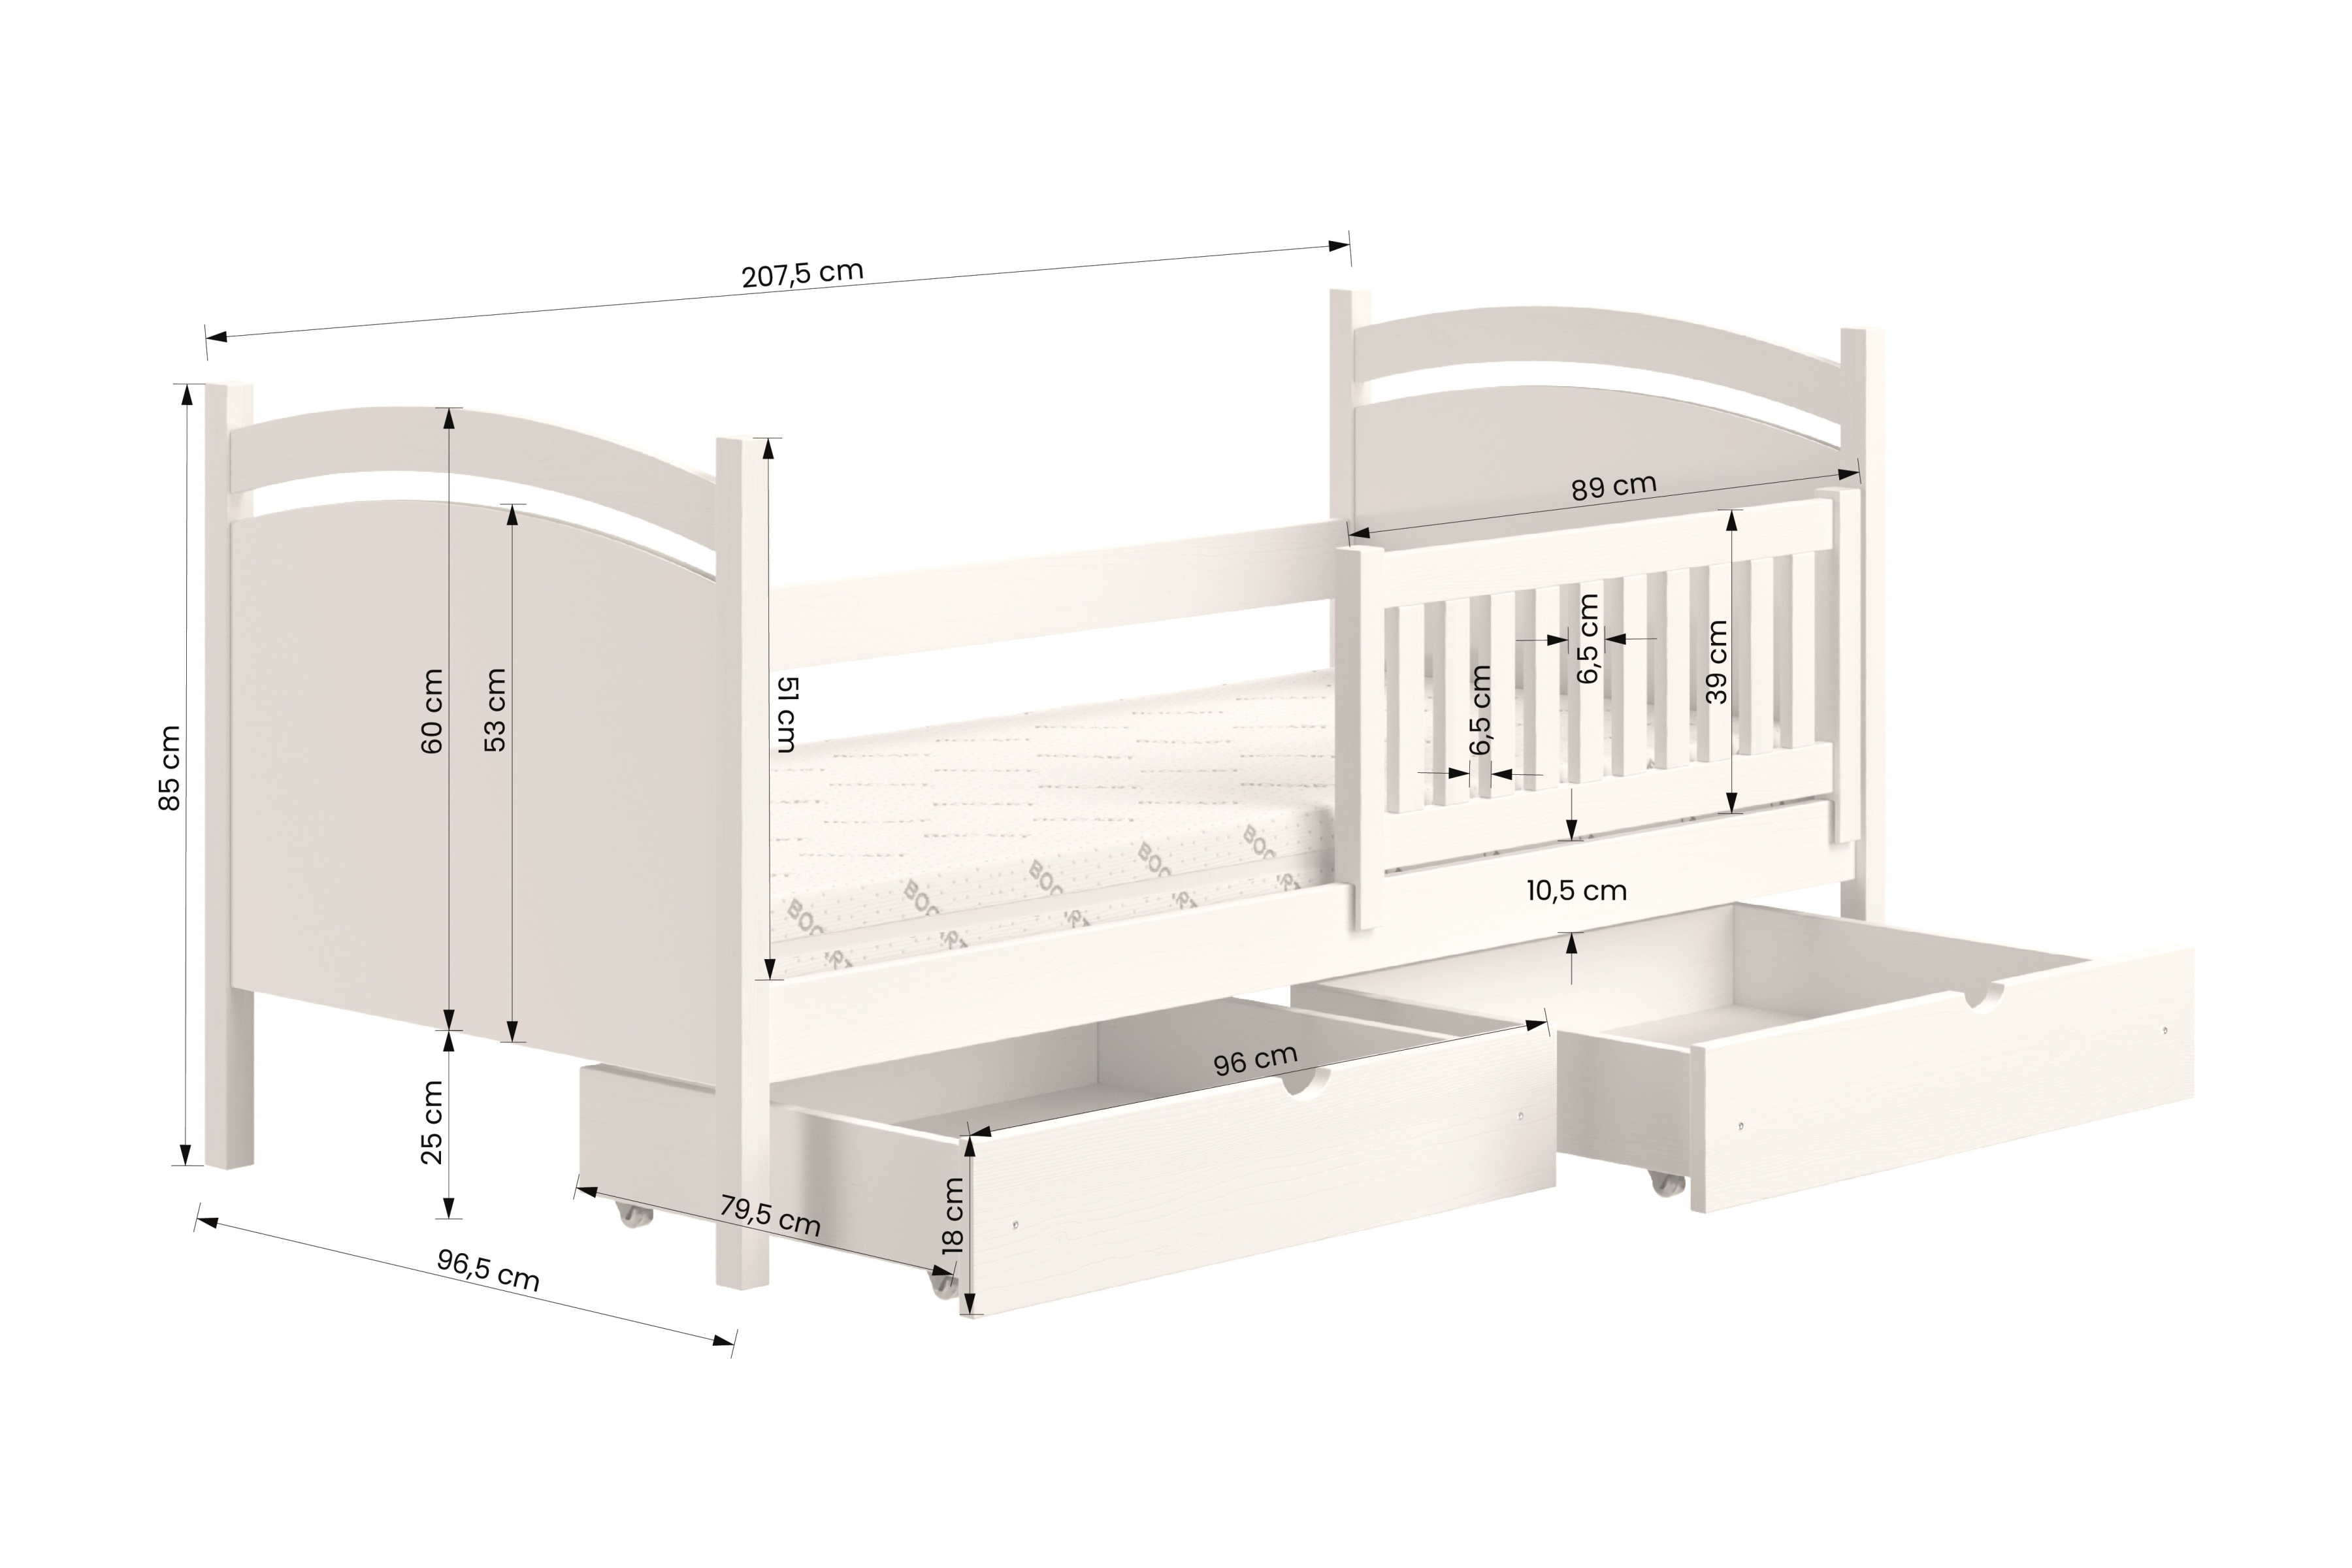 Detská posteľ s tabuľou Amely - Farba šedý, rozmer 90x200 Posteľ dzieciece z tablica suchoscieralna Amely - Rozmery